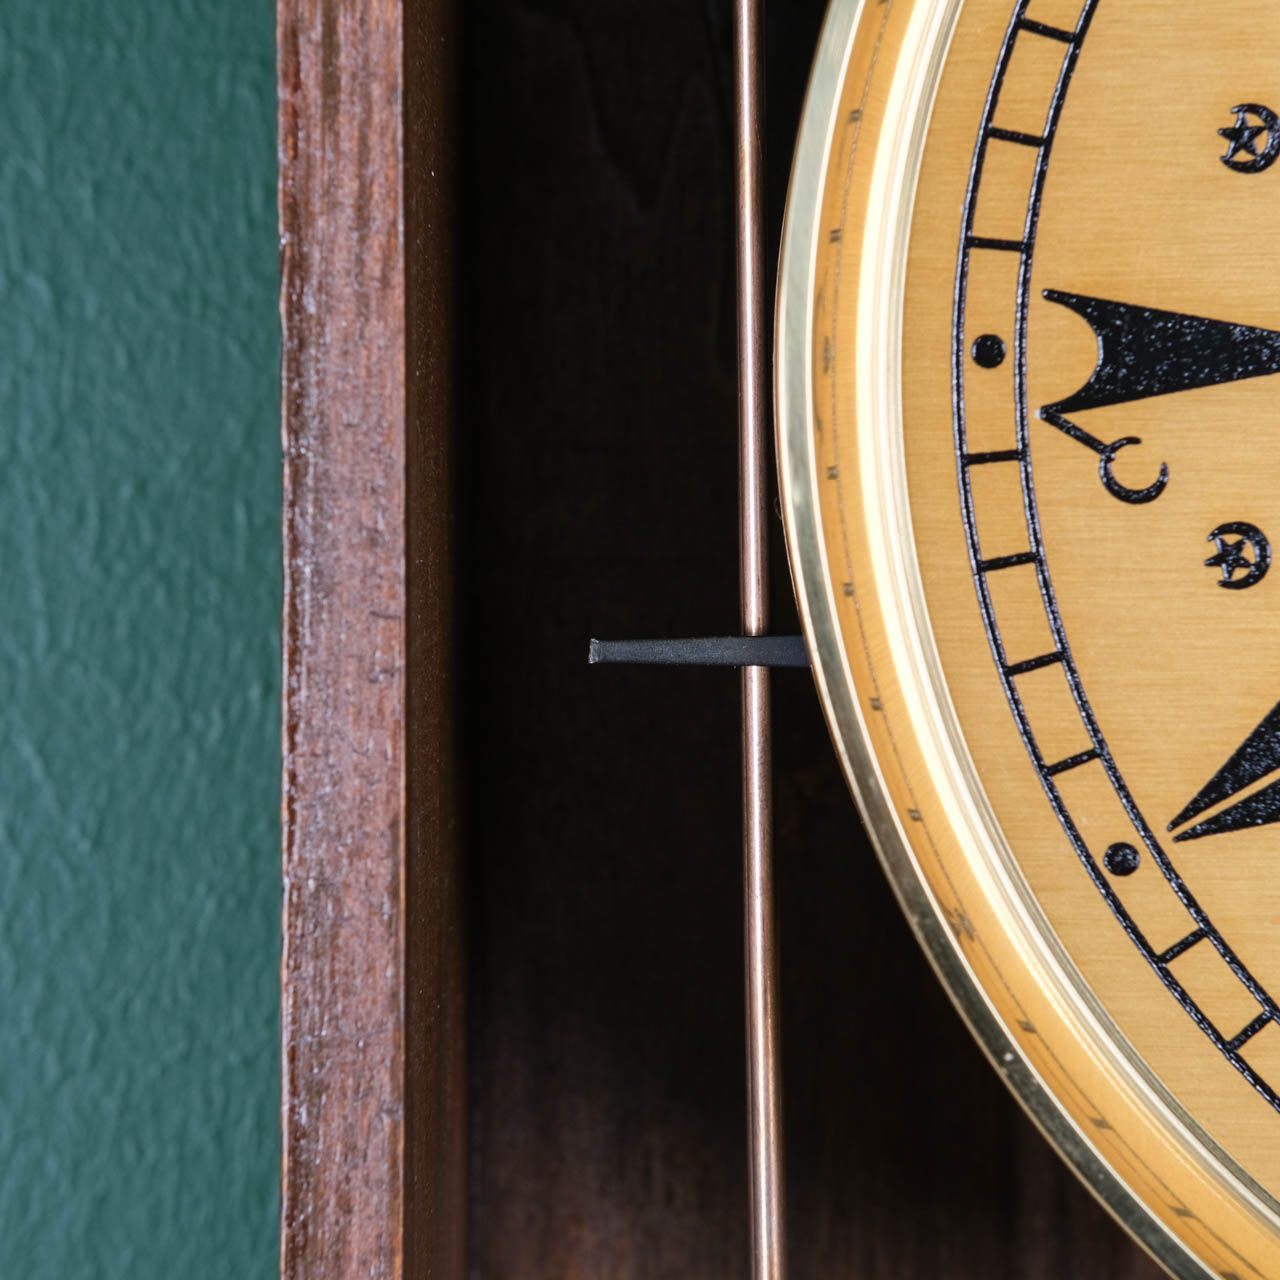 Antique Wall Clock,Antique wooden wall clock